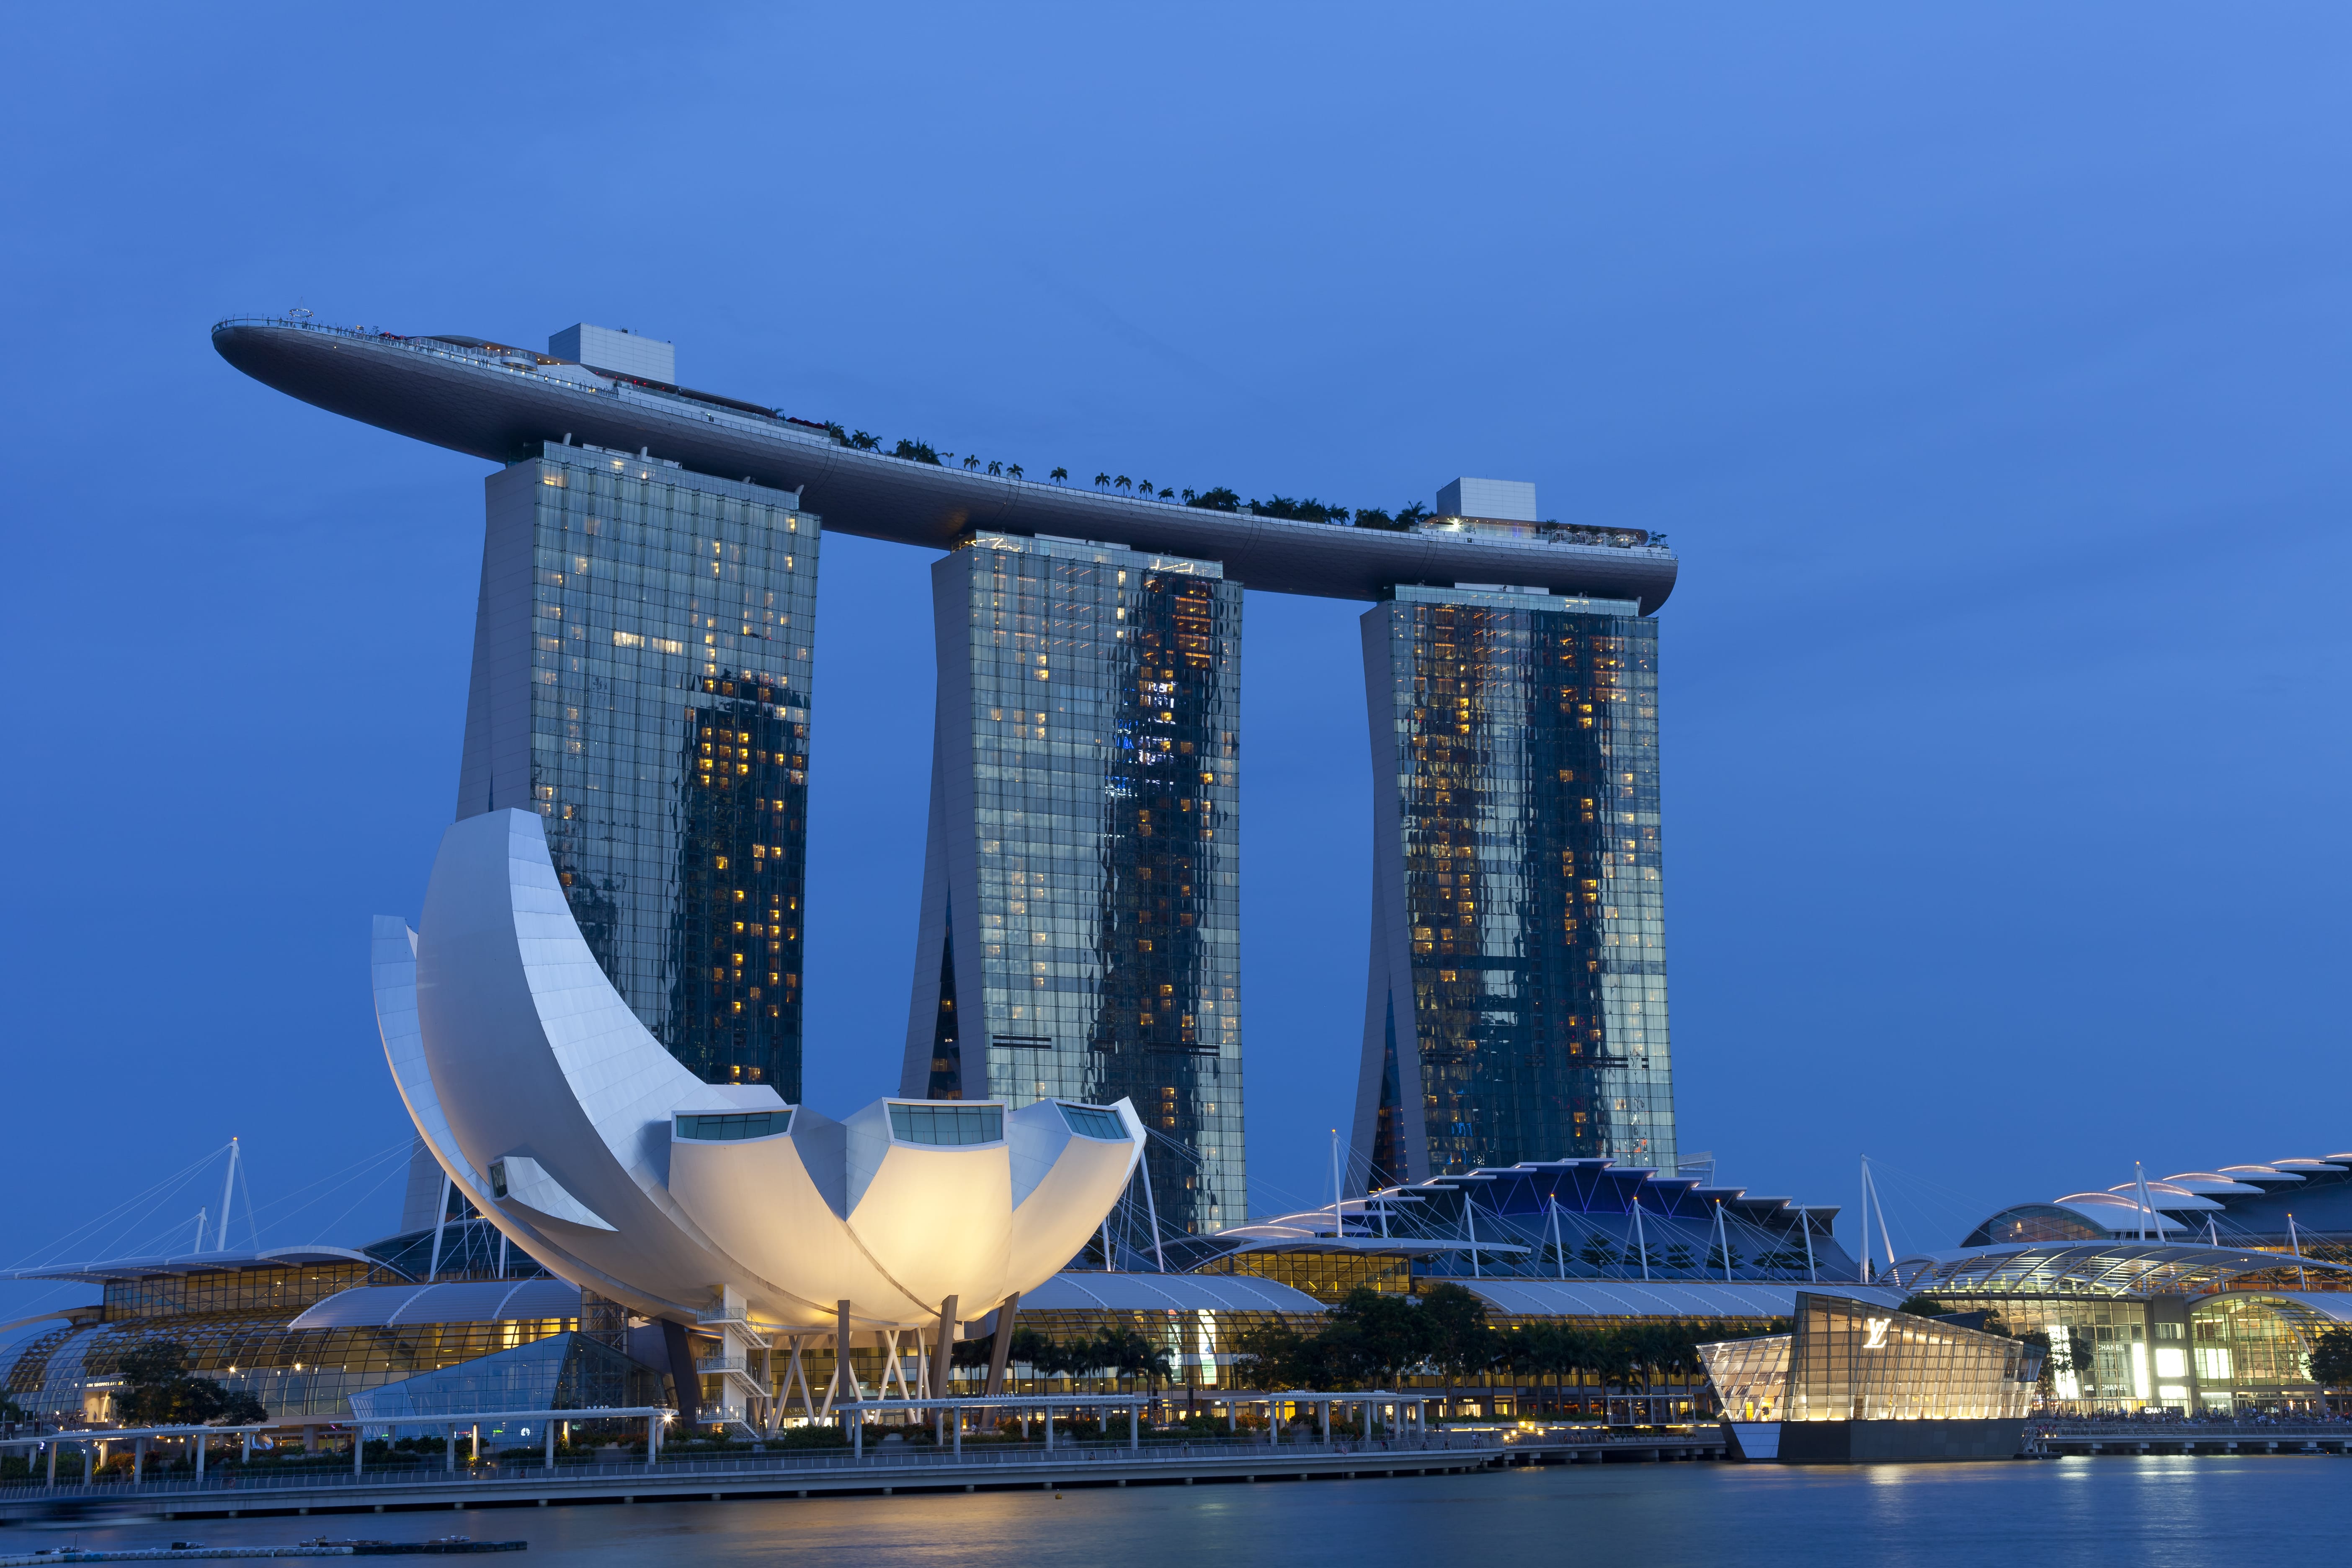 Сингапур, знаменитый отель Marina Bay Sands с бассейном на крыше